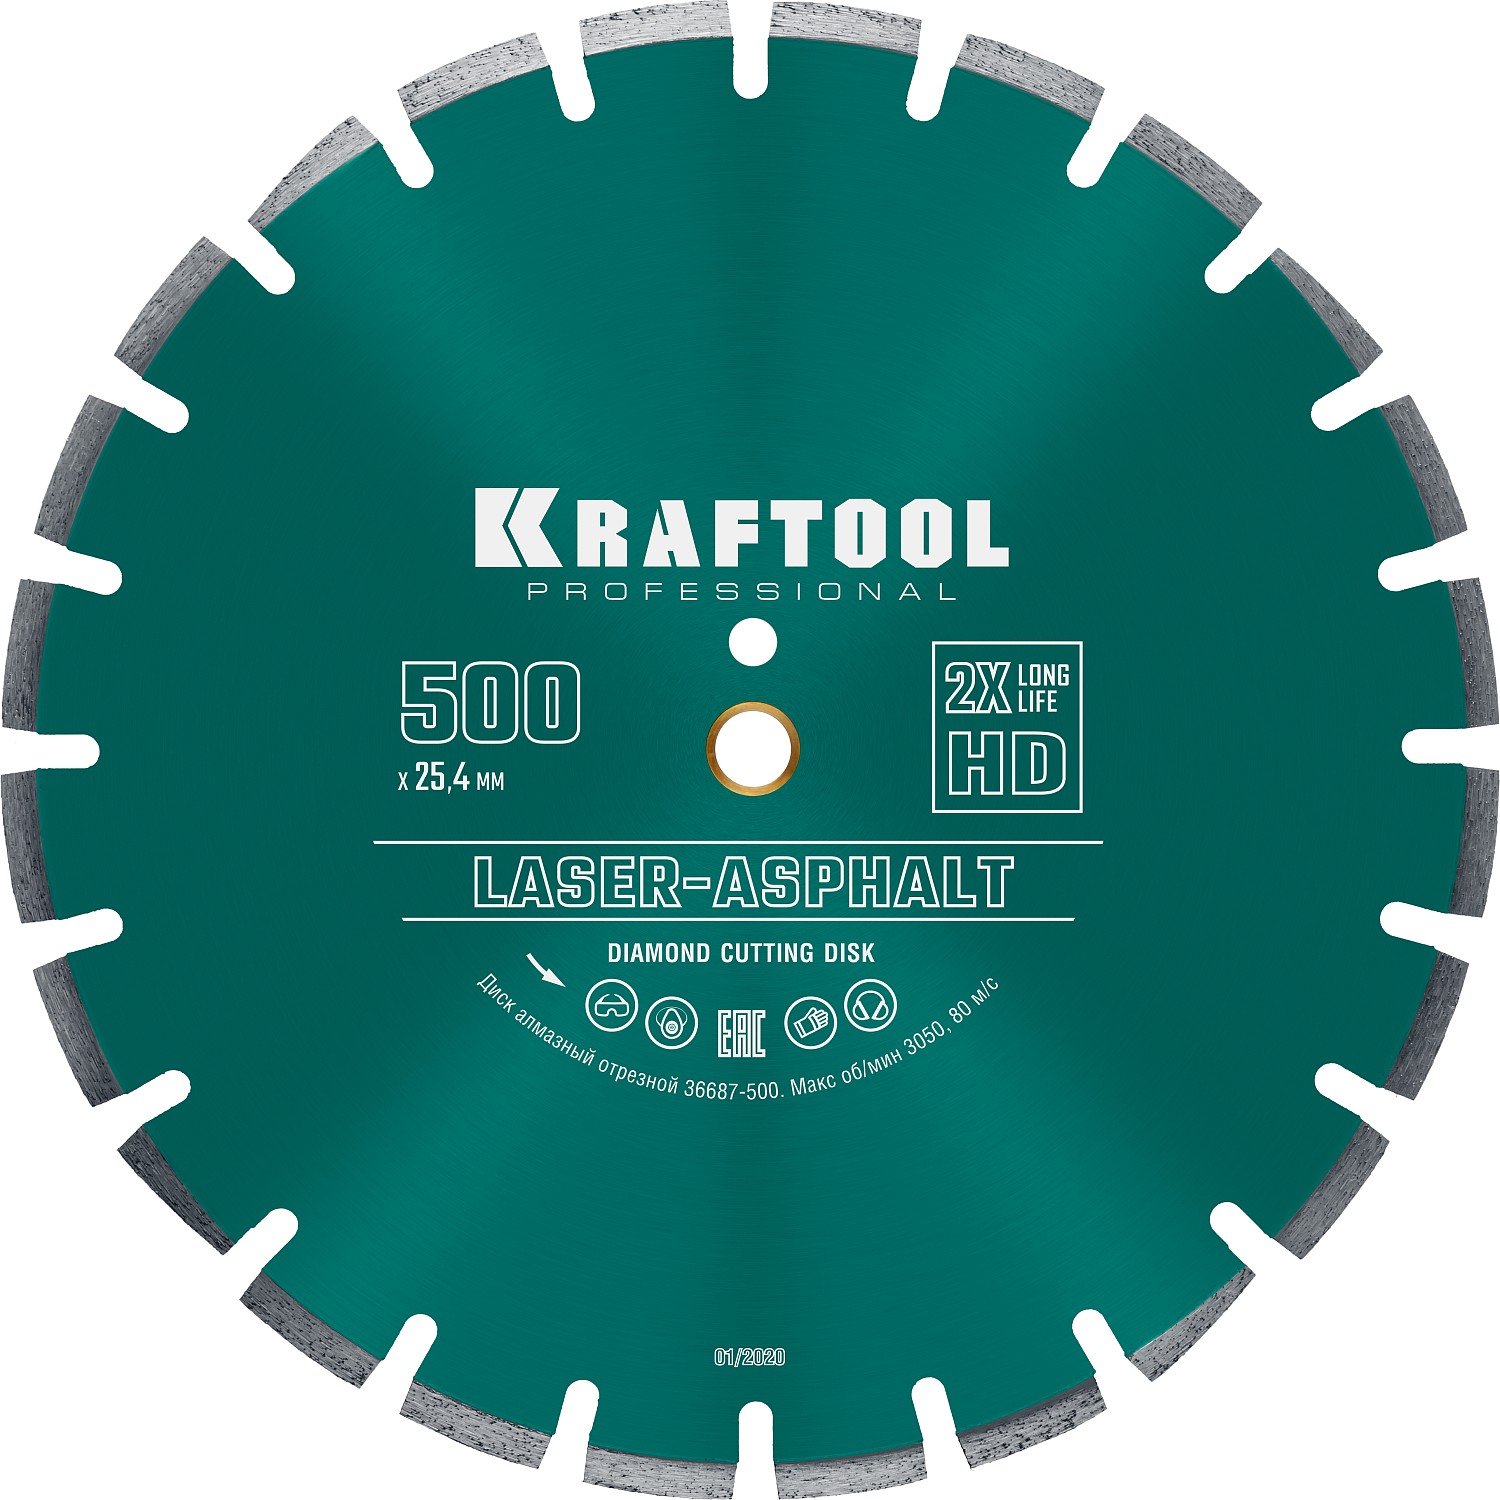 KRAFTOOL LASER-ASPHALT 500 ,      (50025.4 20 , 104.5 ), (36687-500)